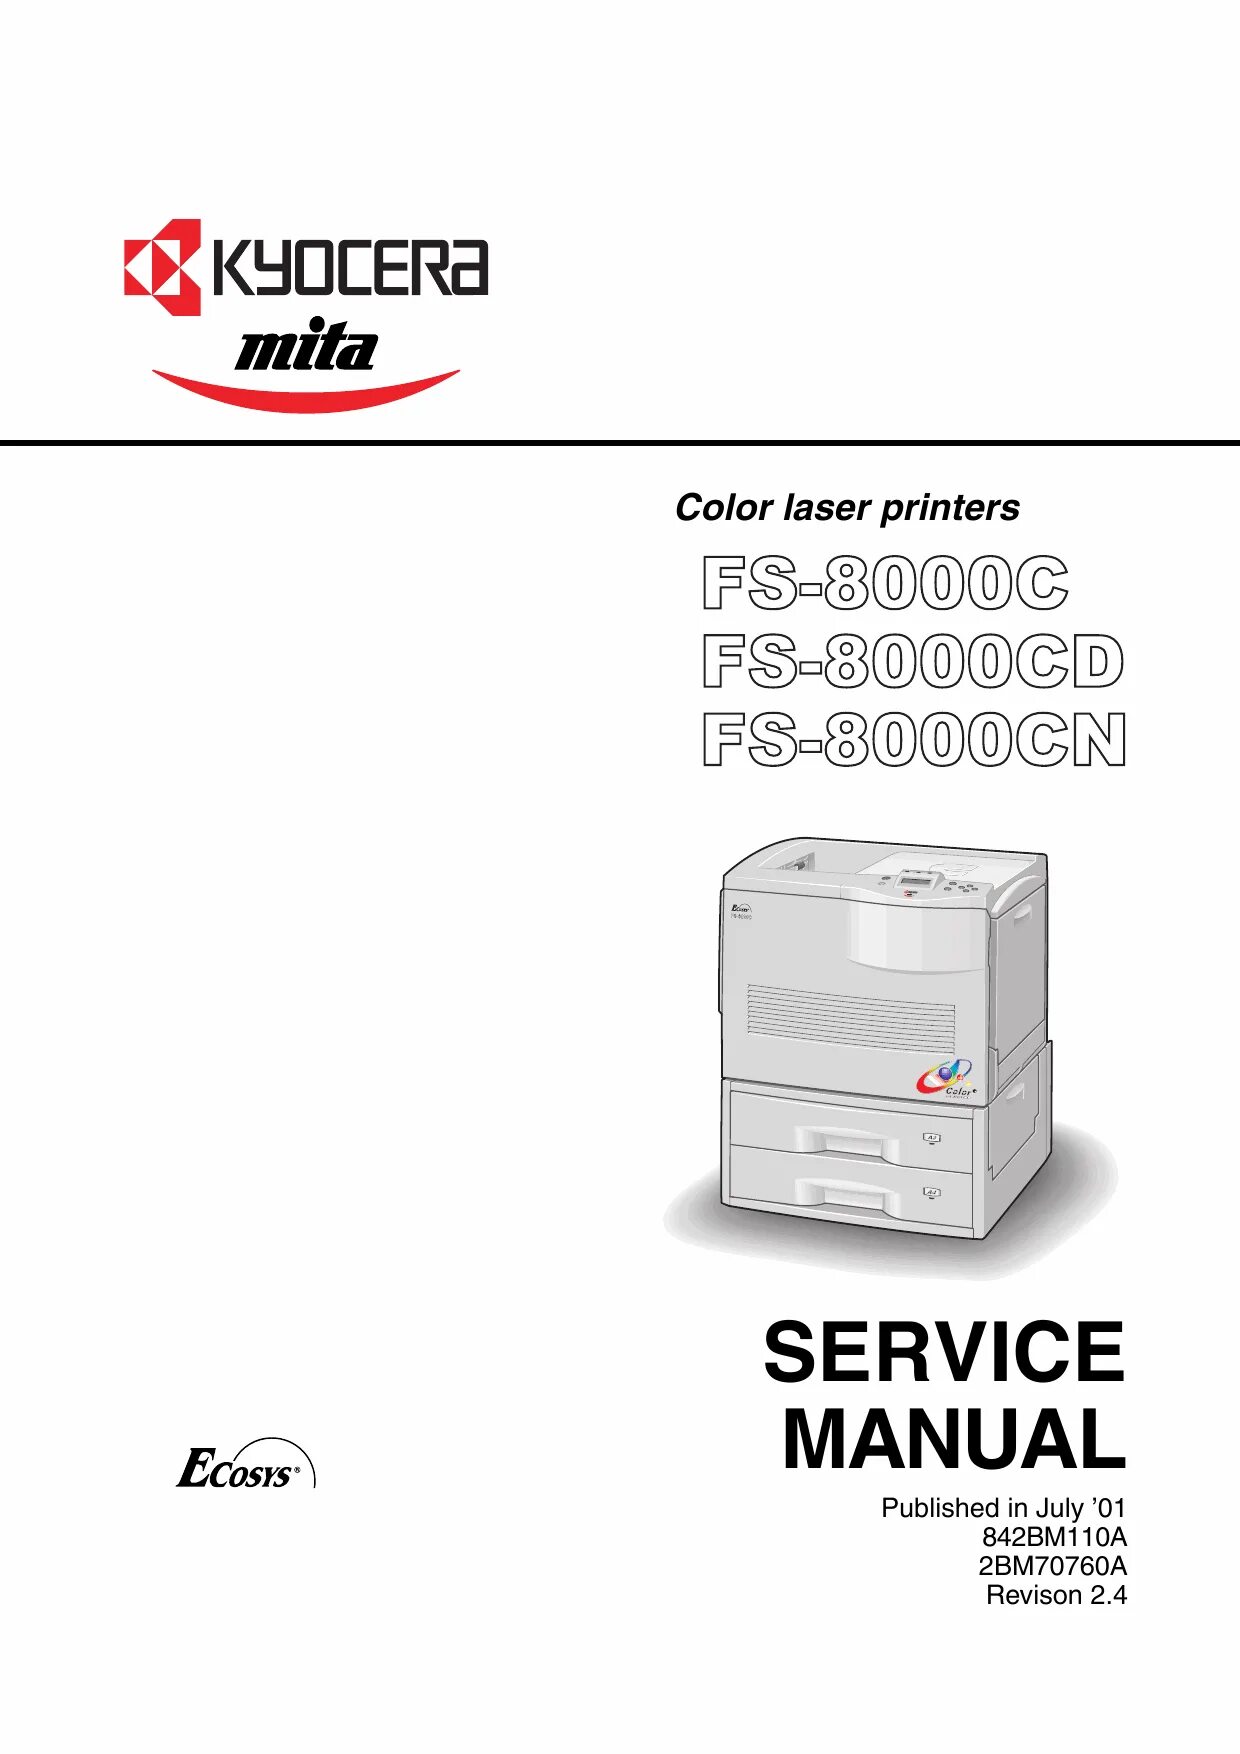 Kyocera service manual. Kyocera c2550 service manual. Service manual. Kyocera a-710 service manual. Принтер Kyocera pa2001.